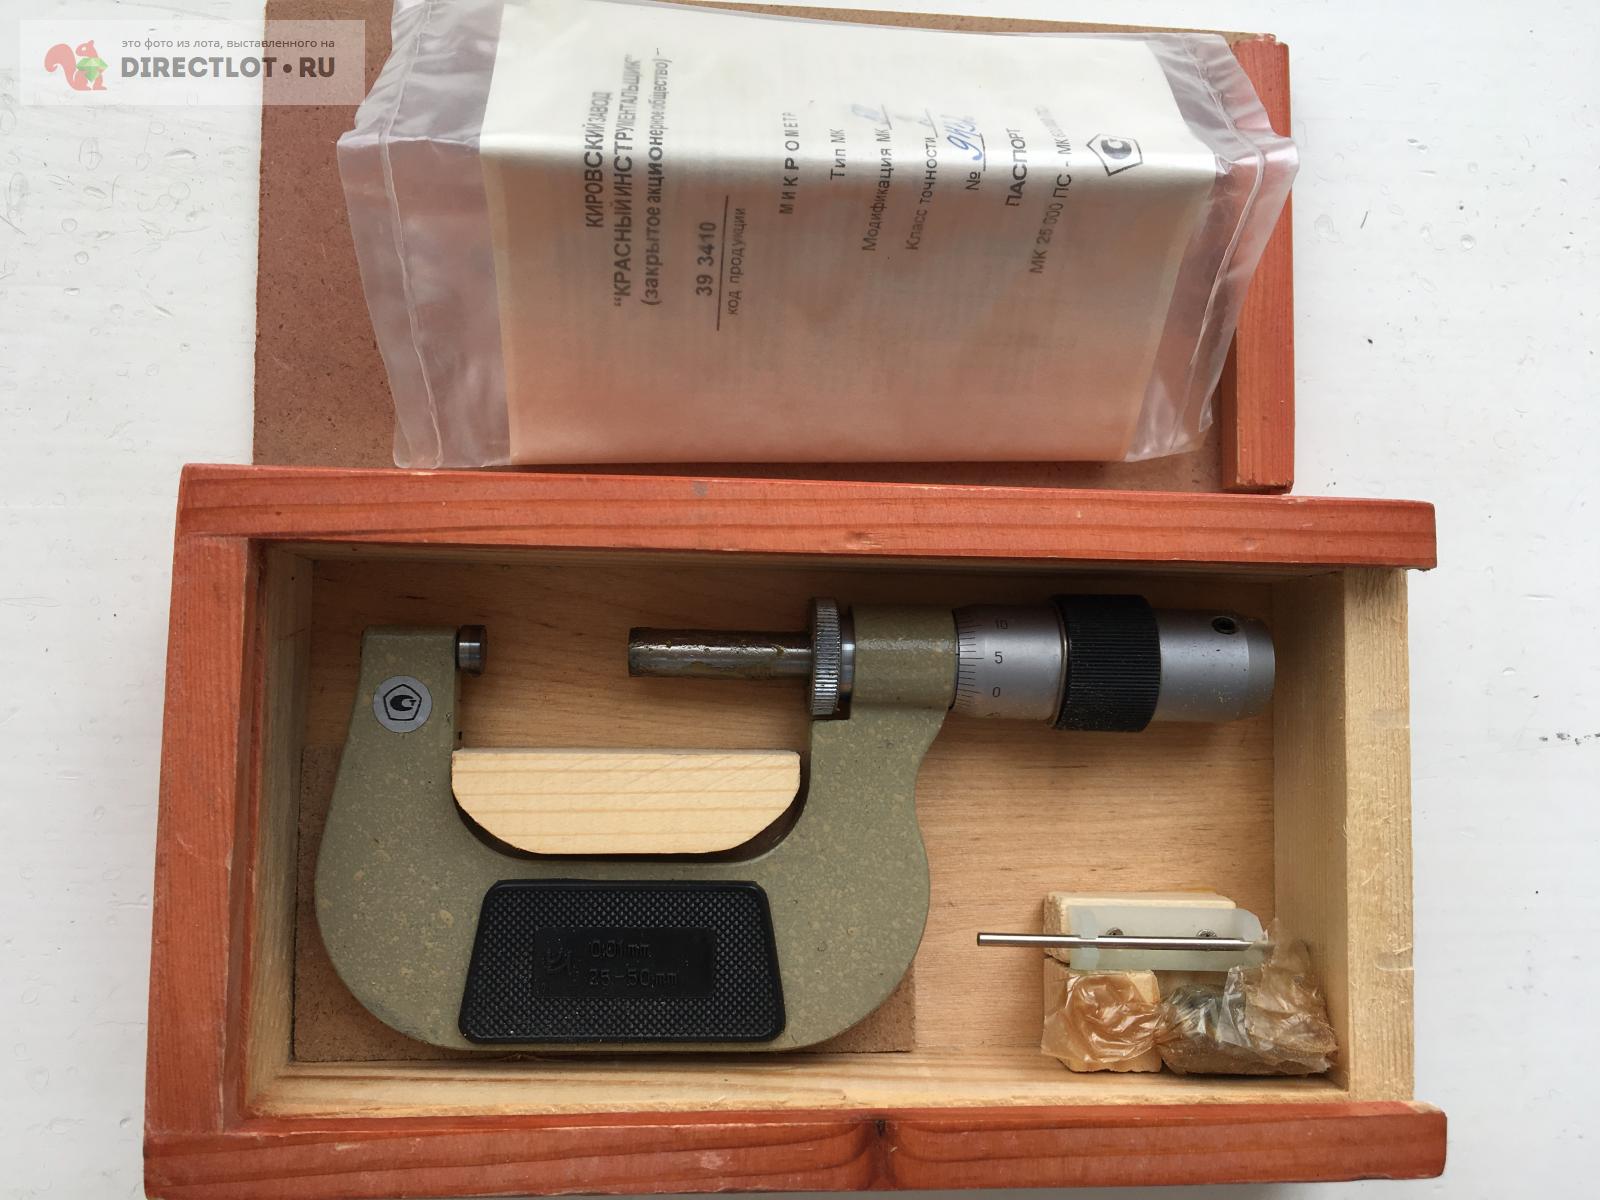 Микрометр МК 50-2 КРИН ( дерев. коробка)  в Самаре цена 3500 Р на .